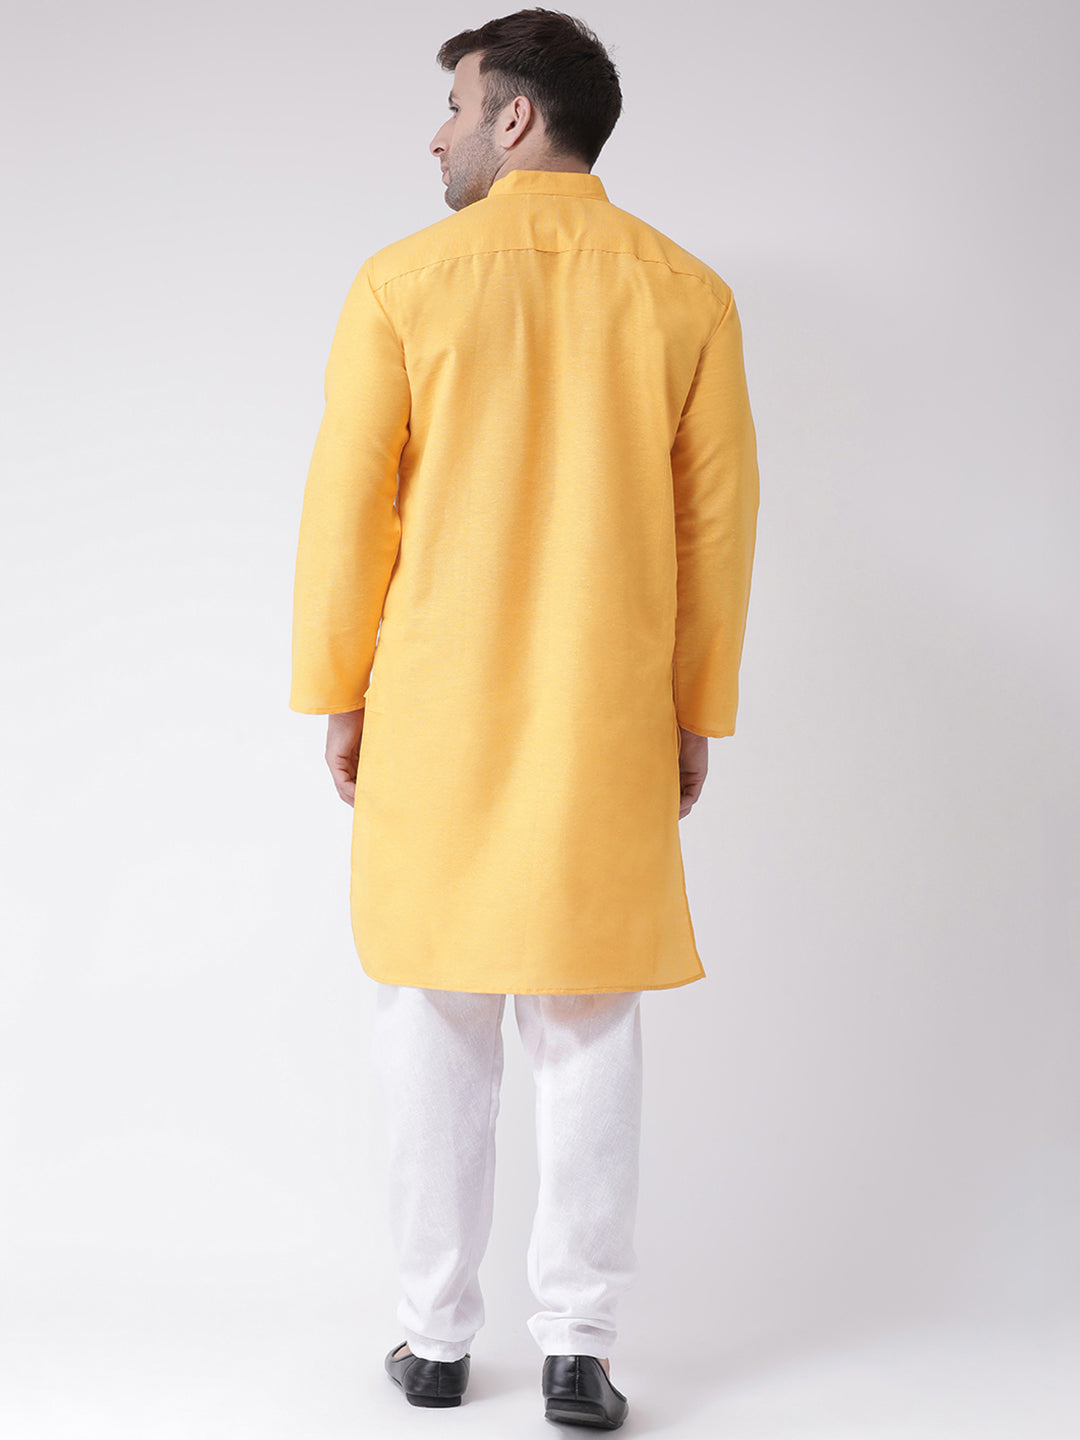 RIAG Yellow Men's Ethnic Long Kurta And Pyjama Set - Distacart